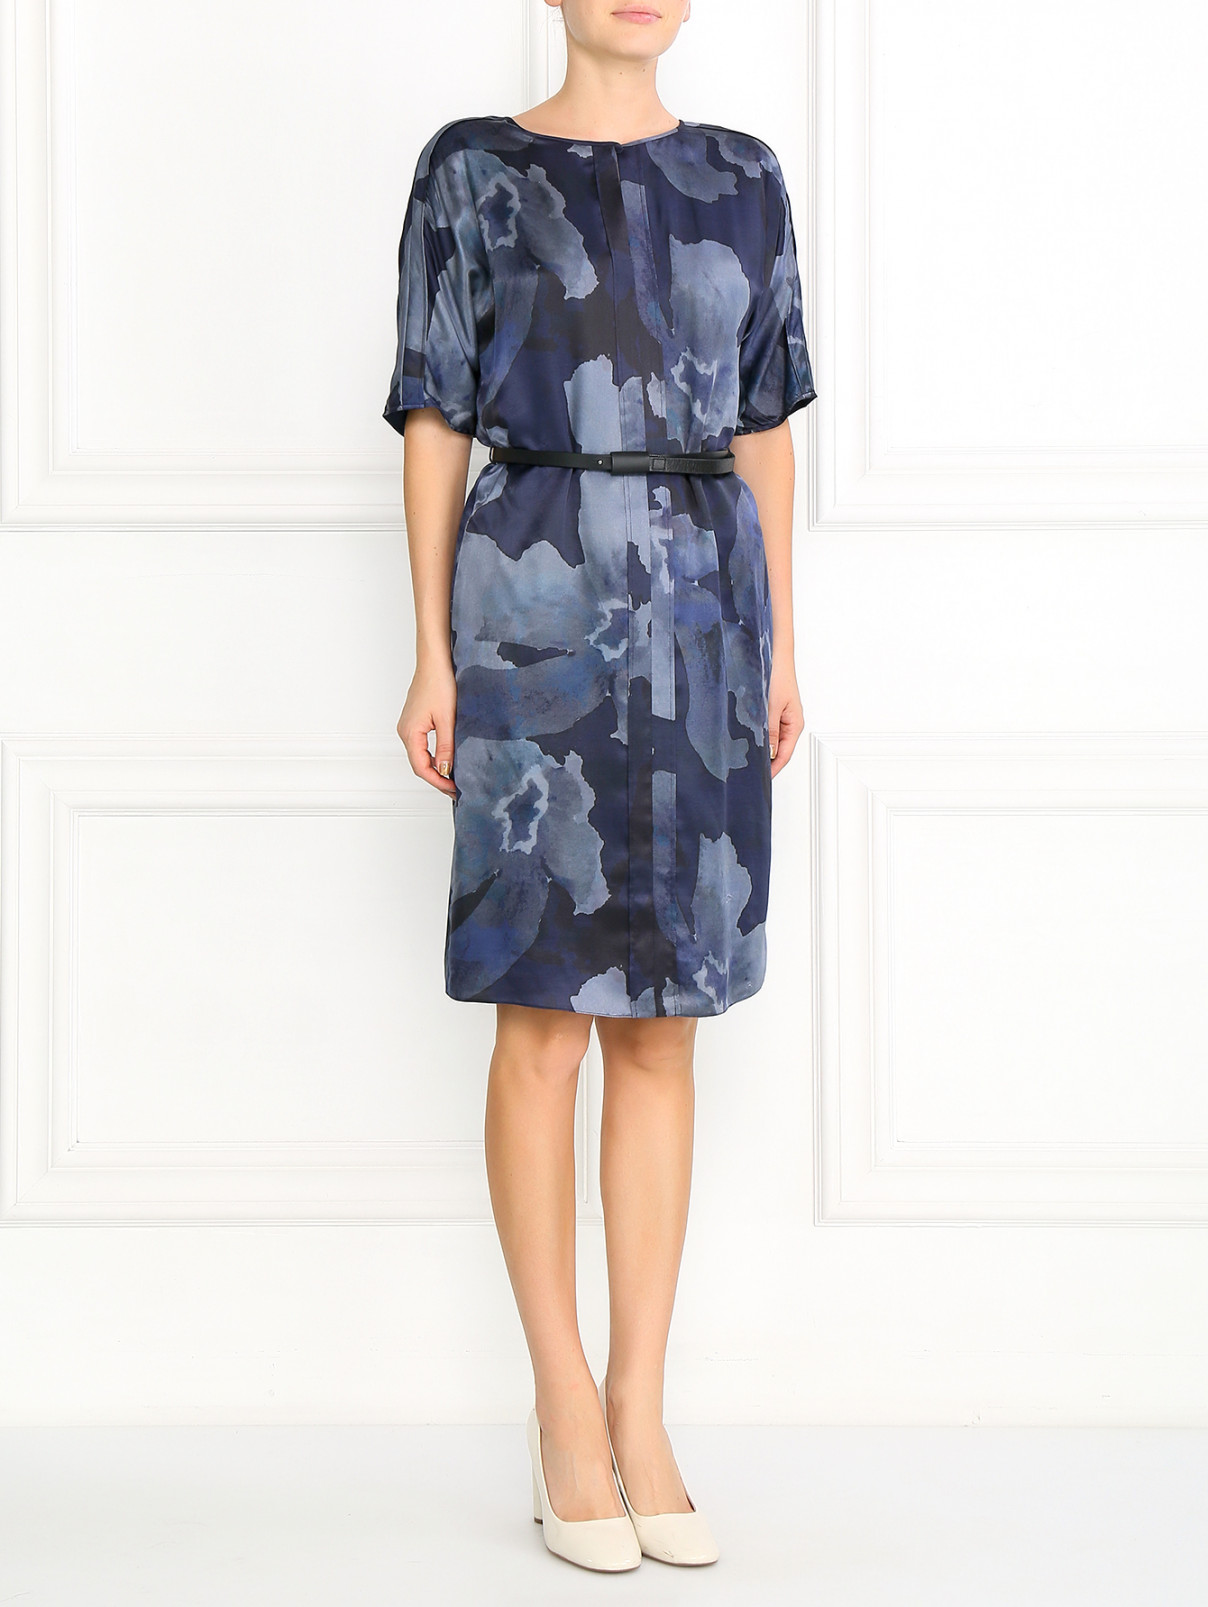 Платье прямого кроя с узором и поясом из кожи Armani Collezioni  –  Модель Общий вид  – Цвет:  Синий